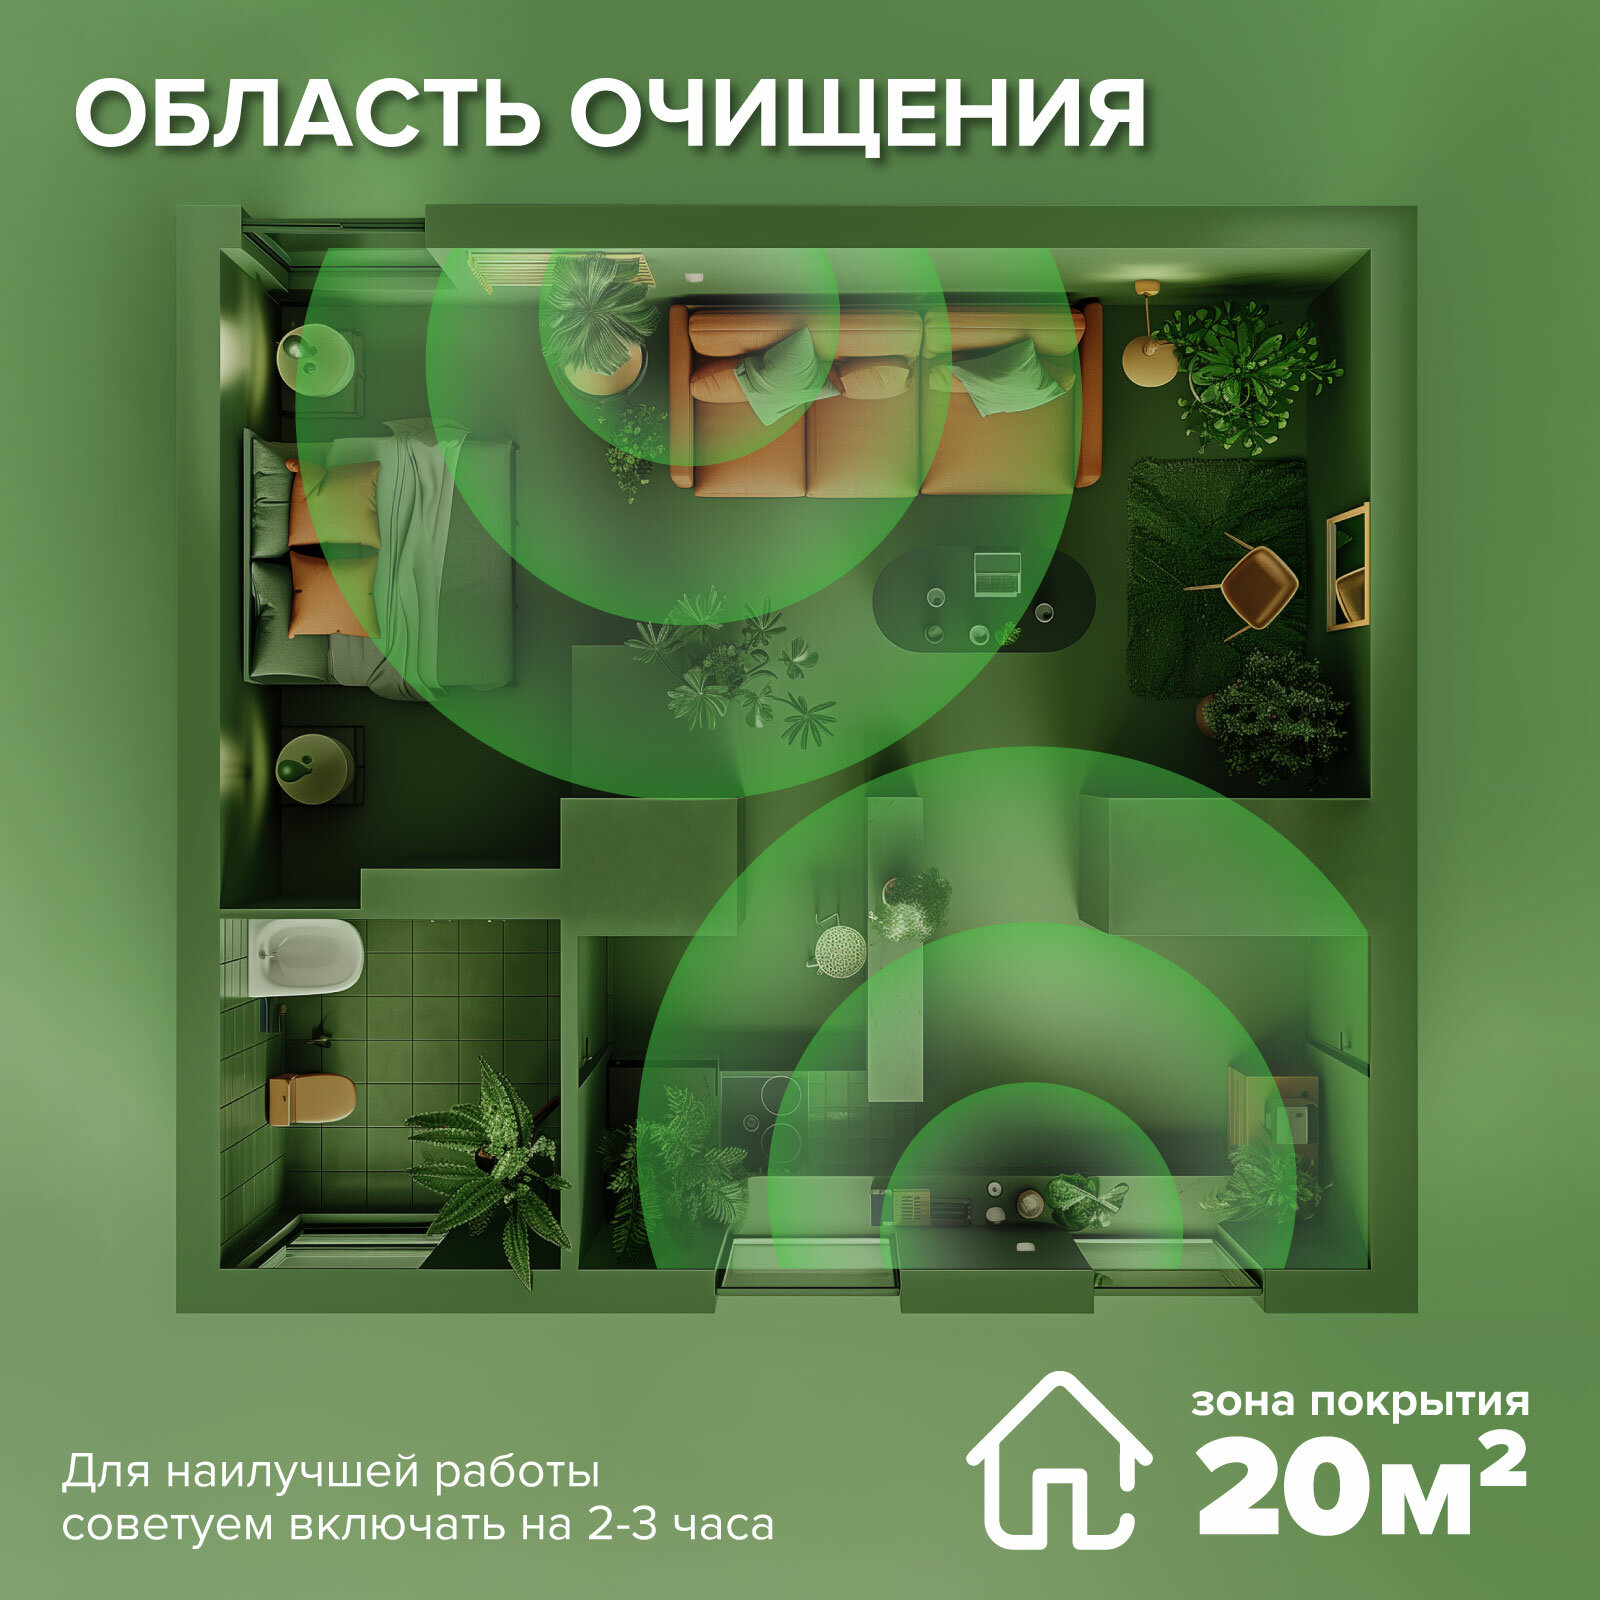 Ионизатор воздуха для дома Evo Sante. Очиститель-ионизатор. Без шума. Площадь покрытия 25 м² - фотография № 8